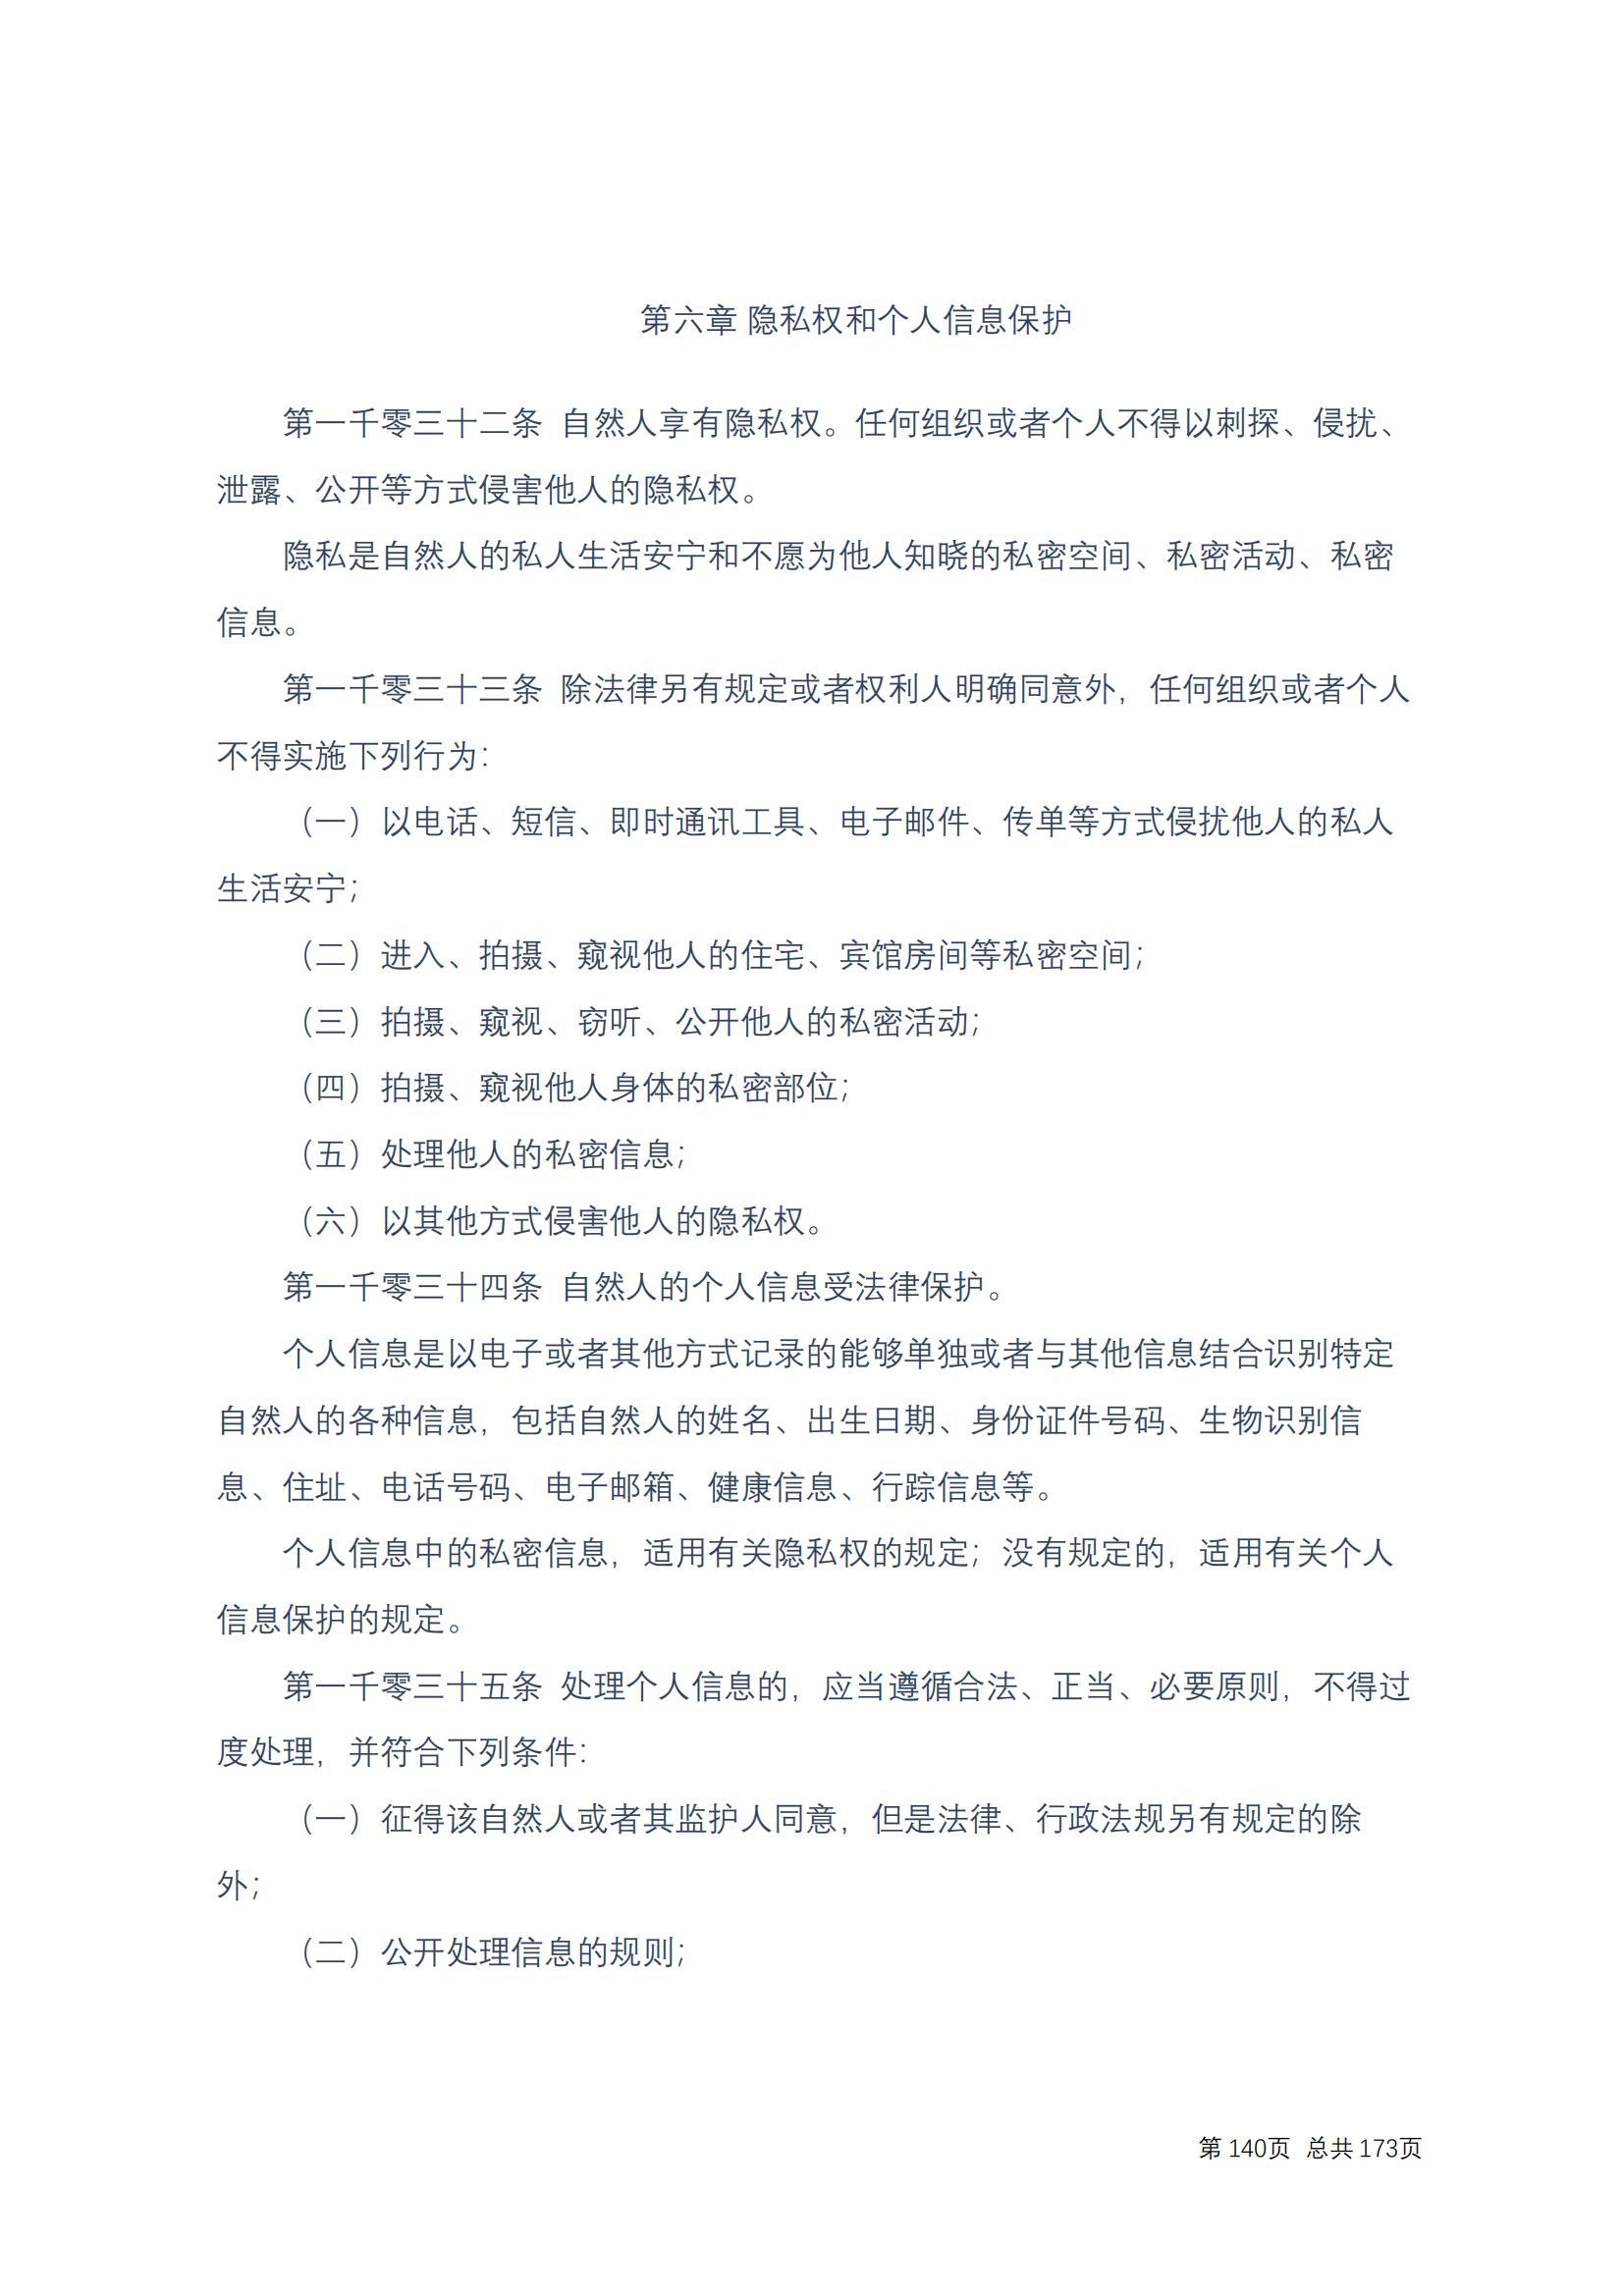 中华人民共和国民法典 修改过_139